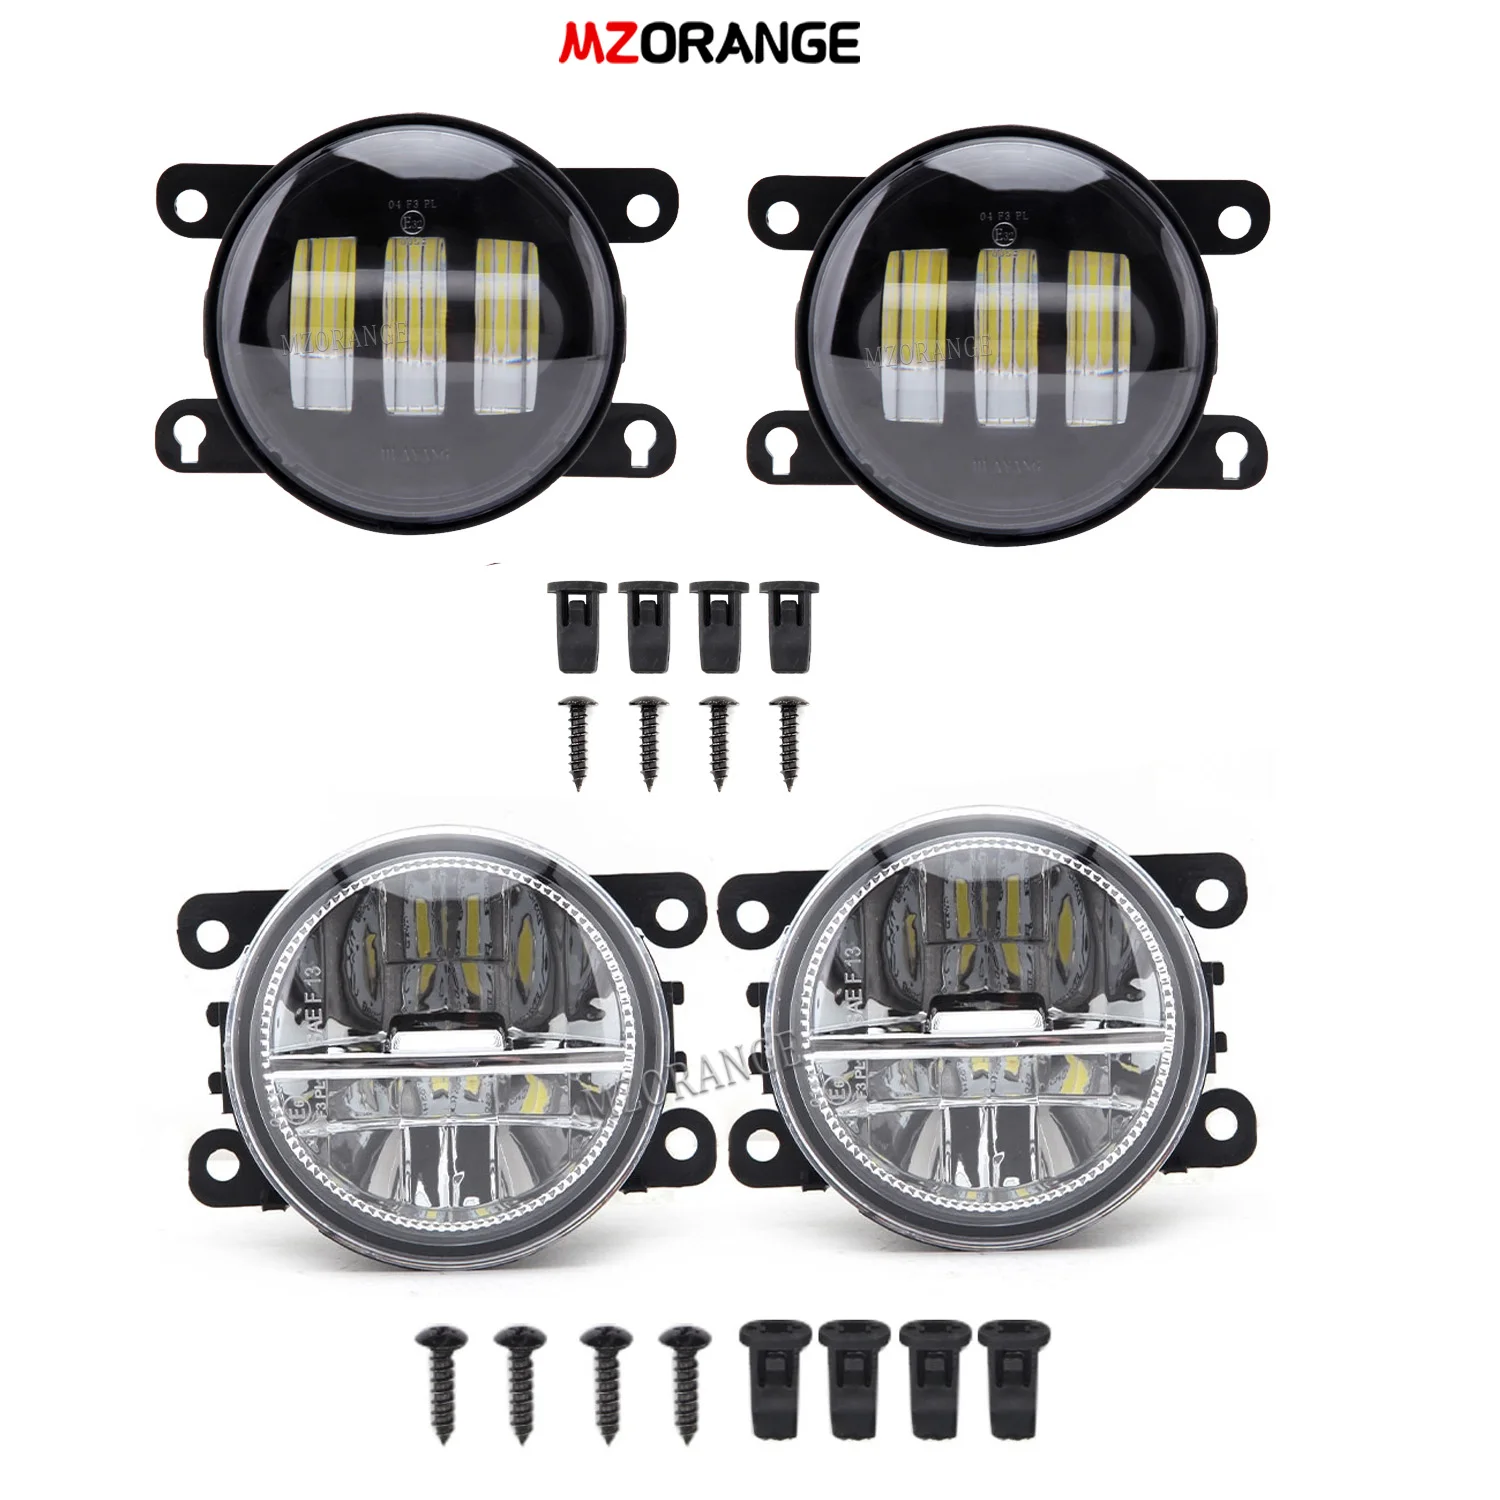 Smoked Fog Lights For Acura TSX L4 V6 2011-2014 ILX 2013-2017 TL 2012-2014 RD 2010-2017 LED Fog Light Driving Fog Lamp Headlight